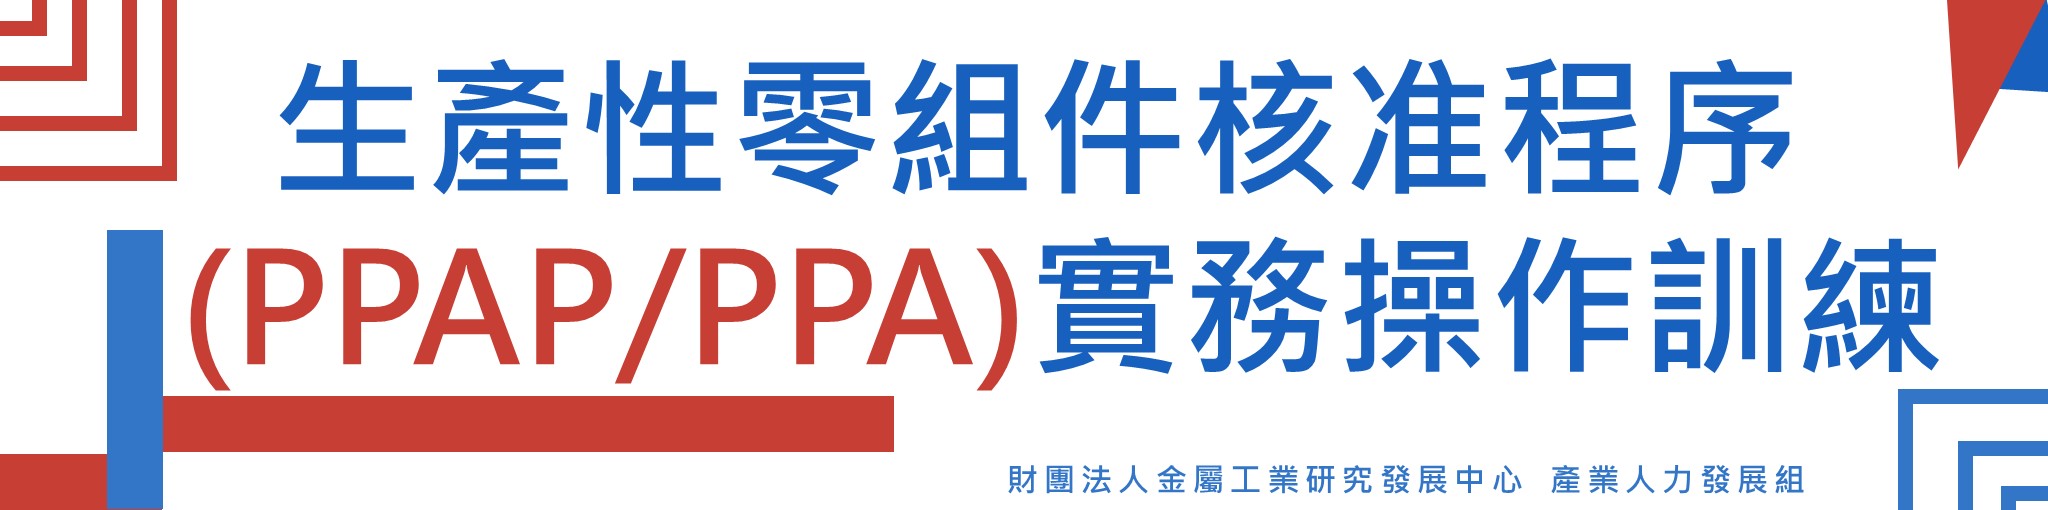 生產性零組件核准程序(PPAP/PPA)實務操作訓練